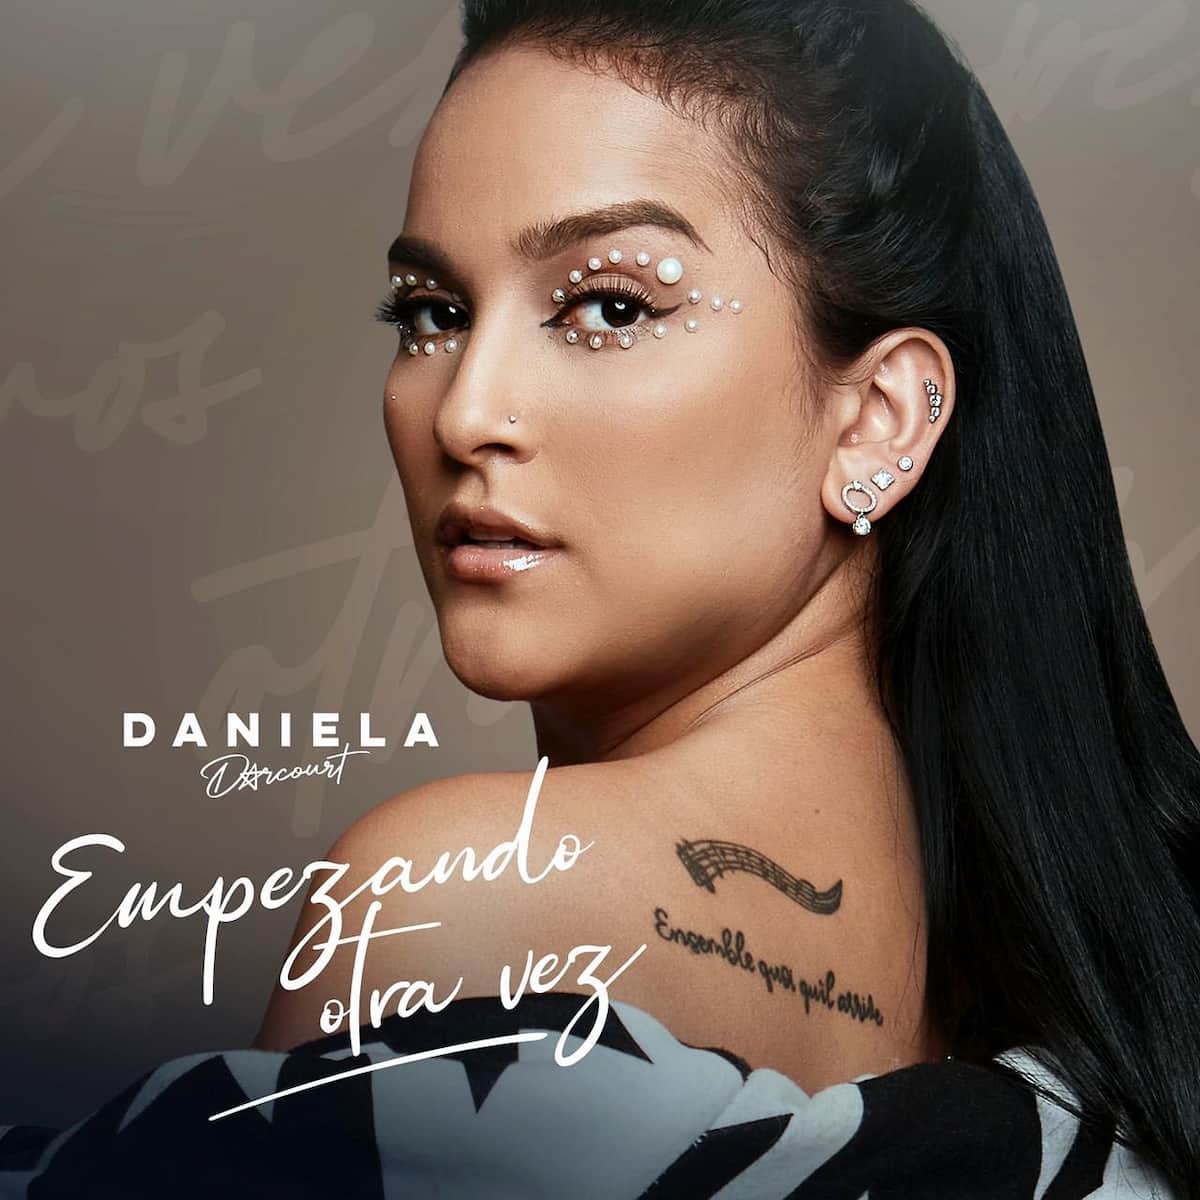 Daniela Darcourt 2022 - Neues Salsa-Album “Empezando otra vez” veröffentlicht